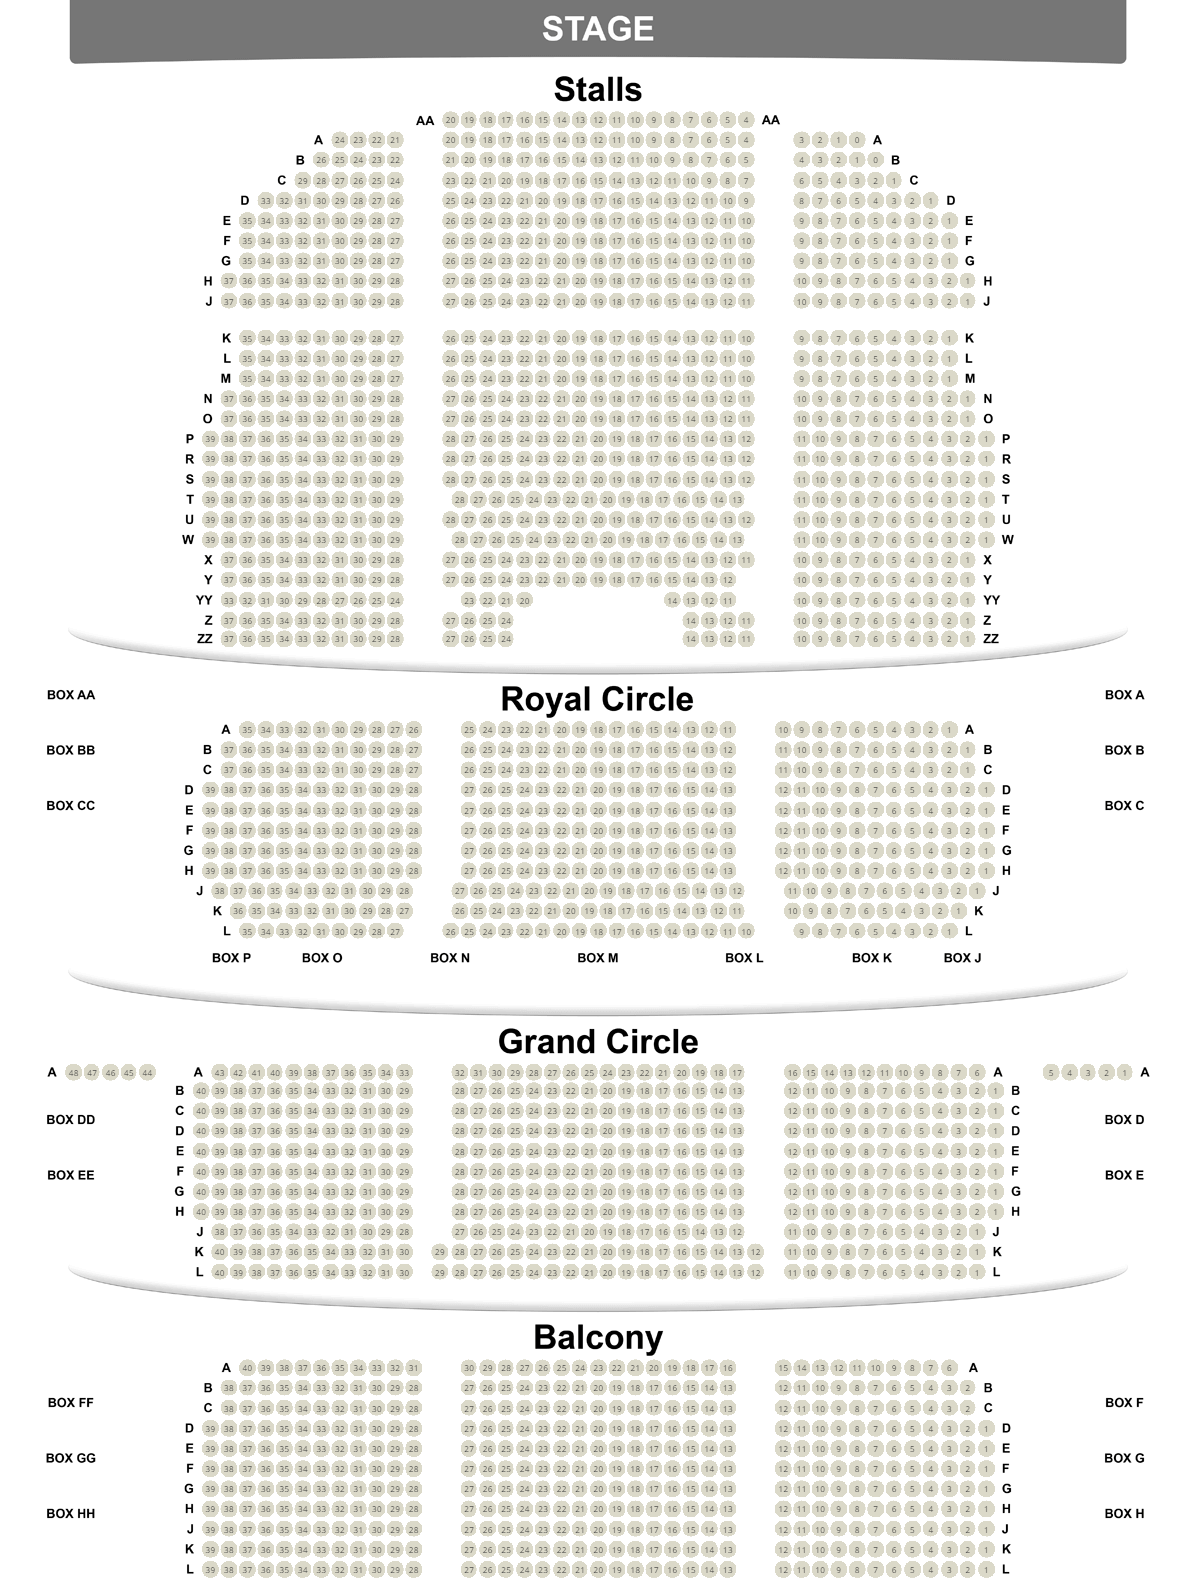 Seating Map Theatre Royal Drury Lane